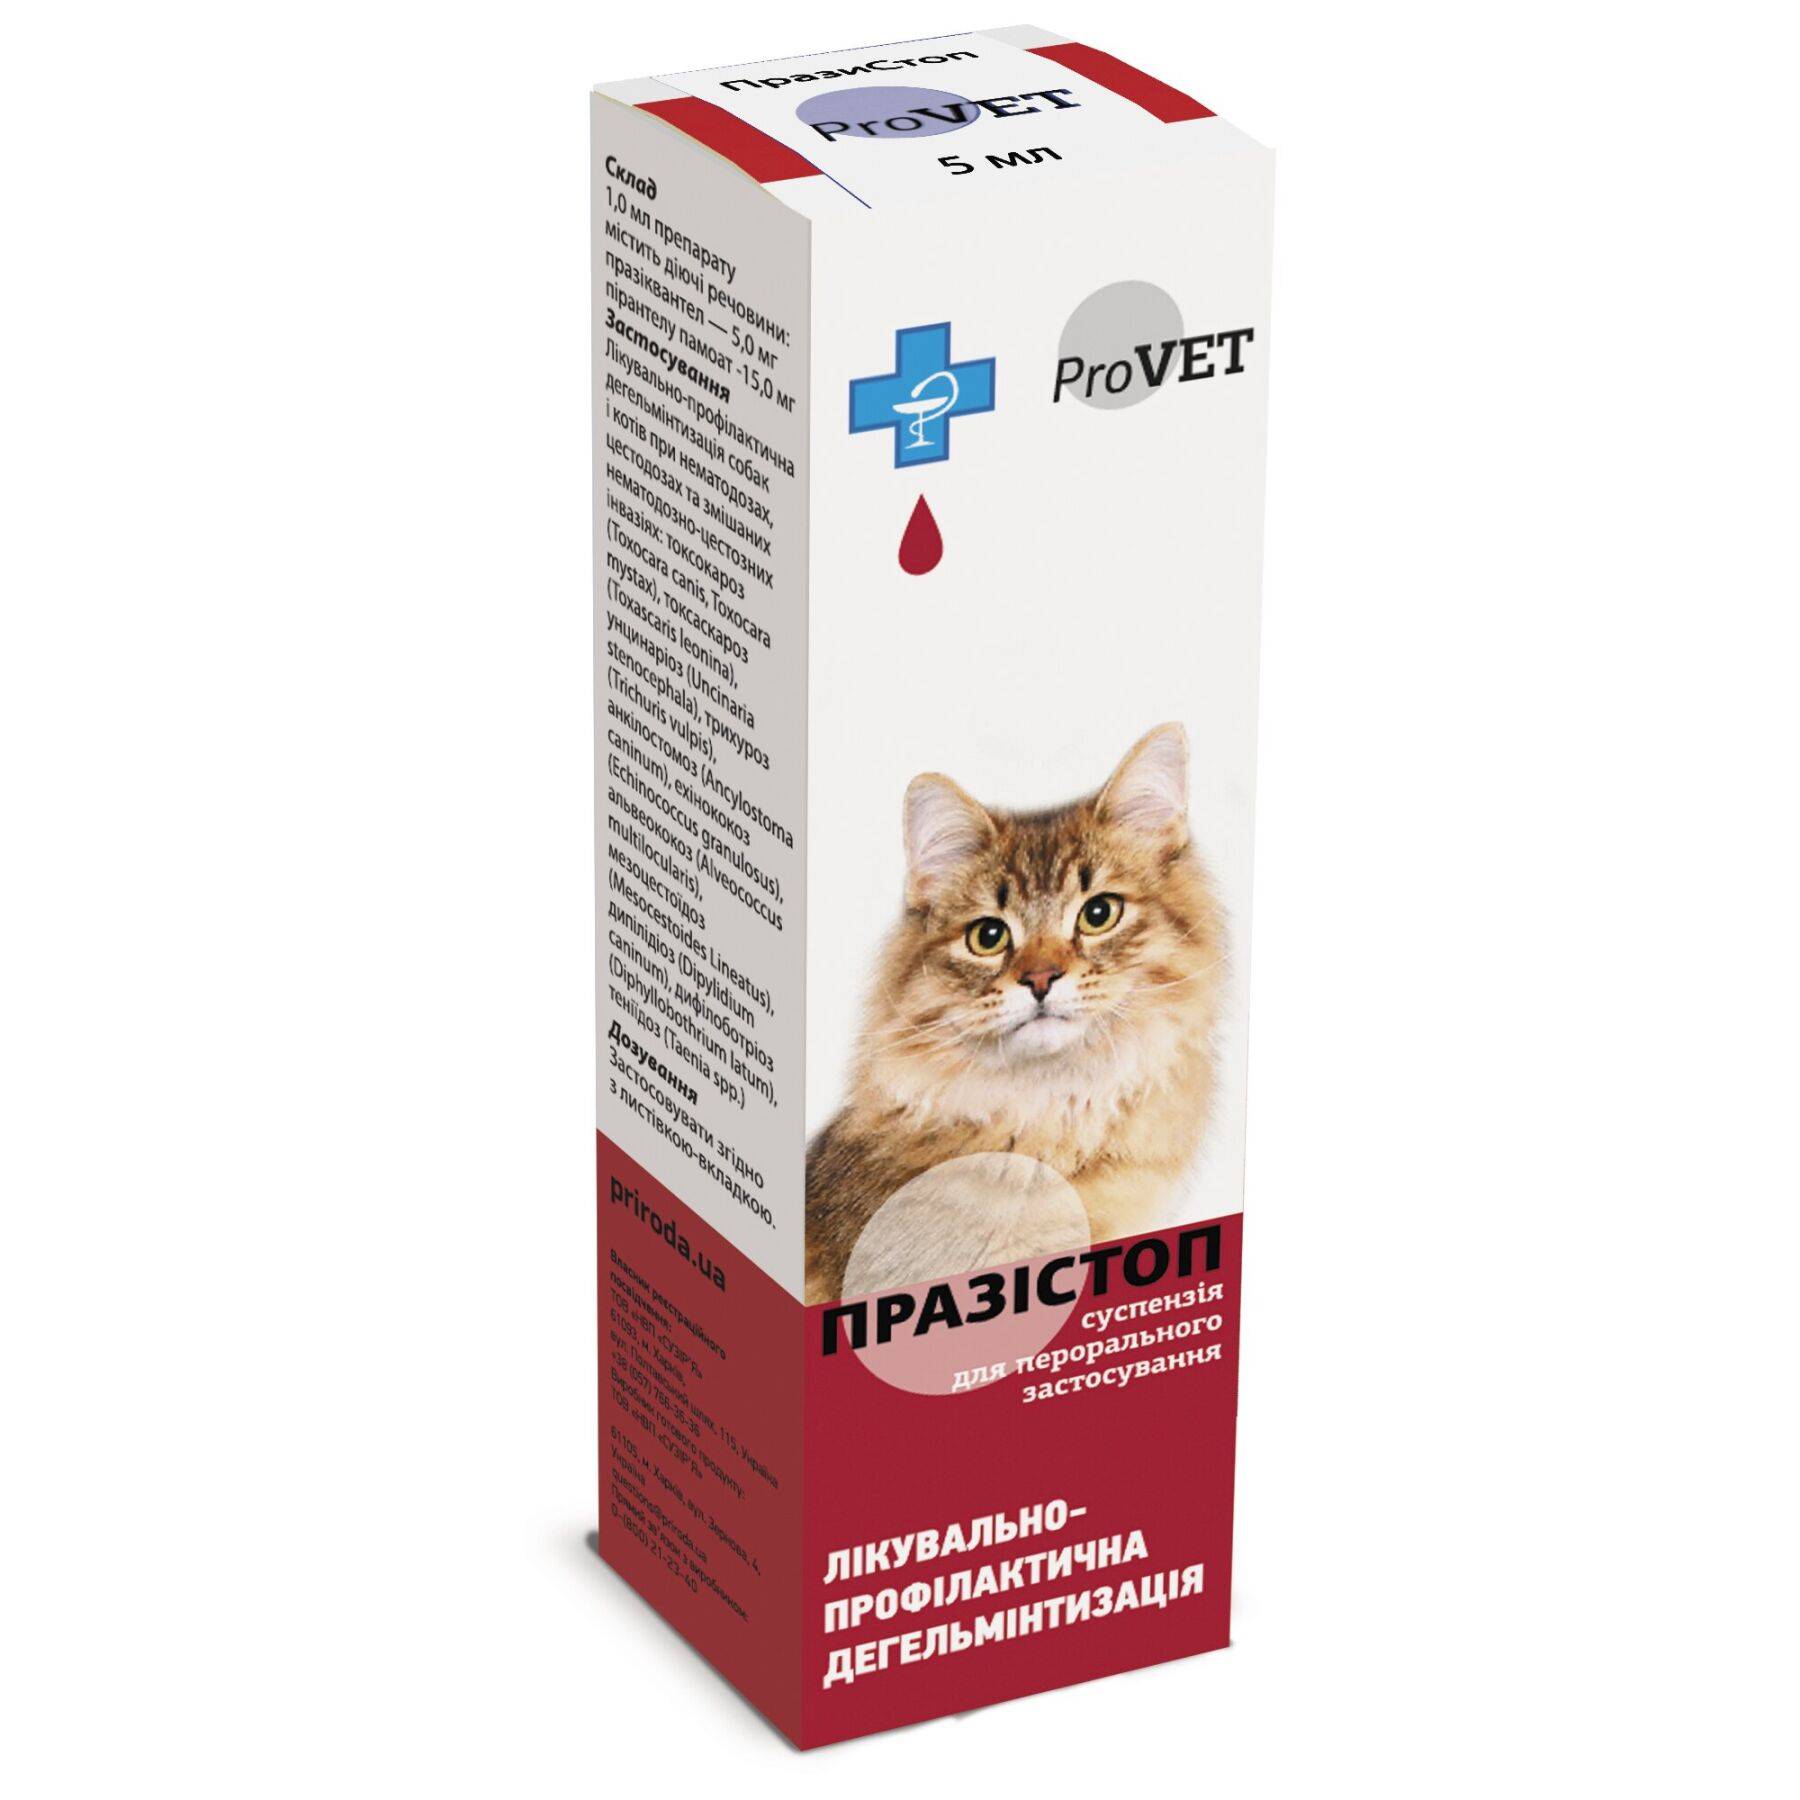 Таблетки от глистов для кошек : инструкция по применению | компетентно о здоровье на ilive